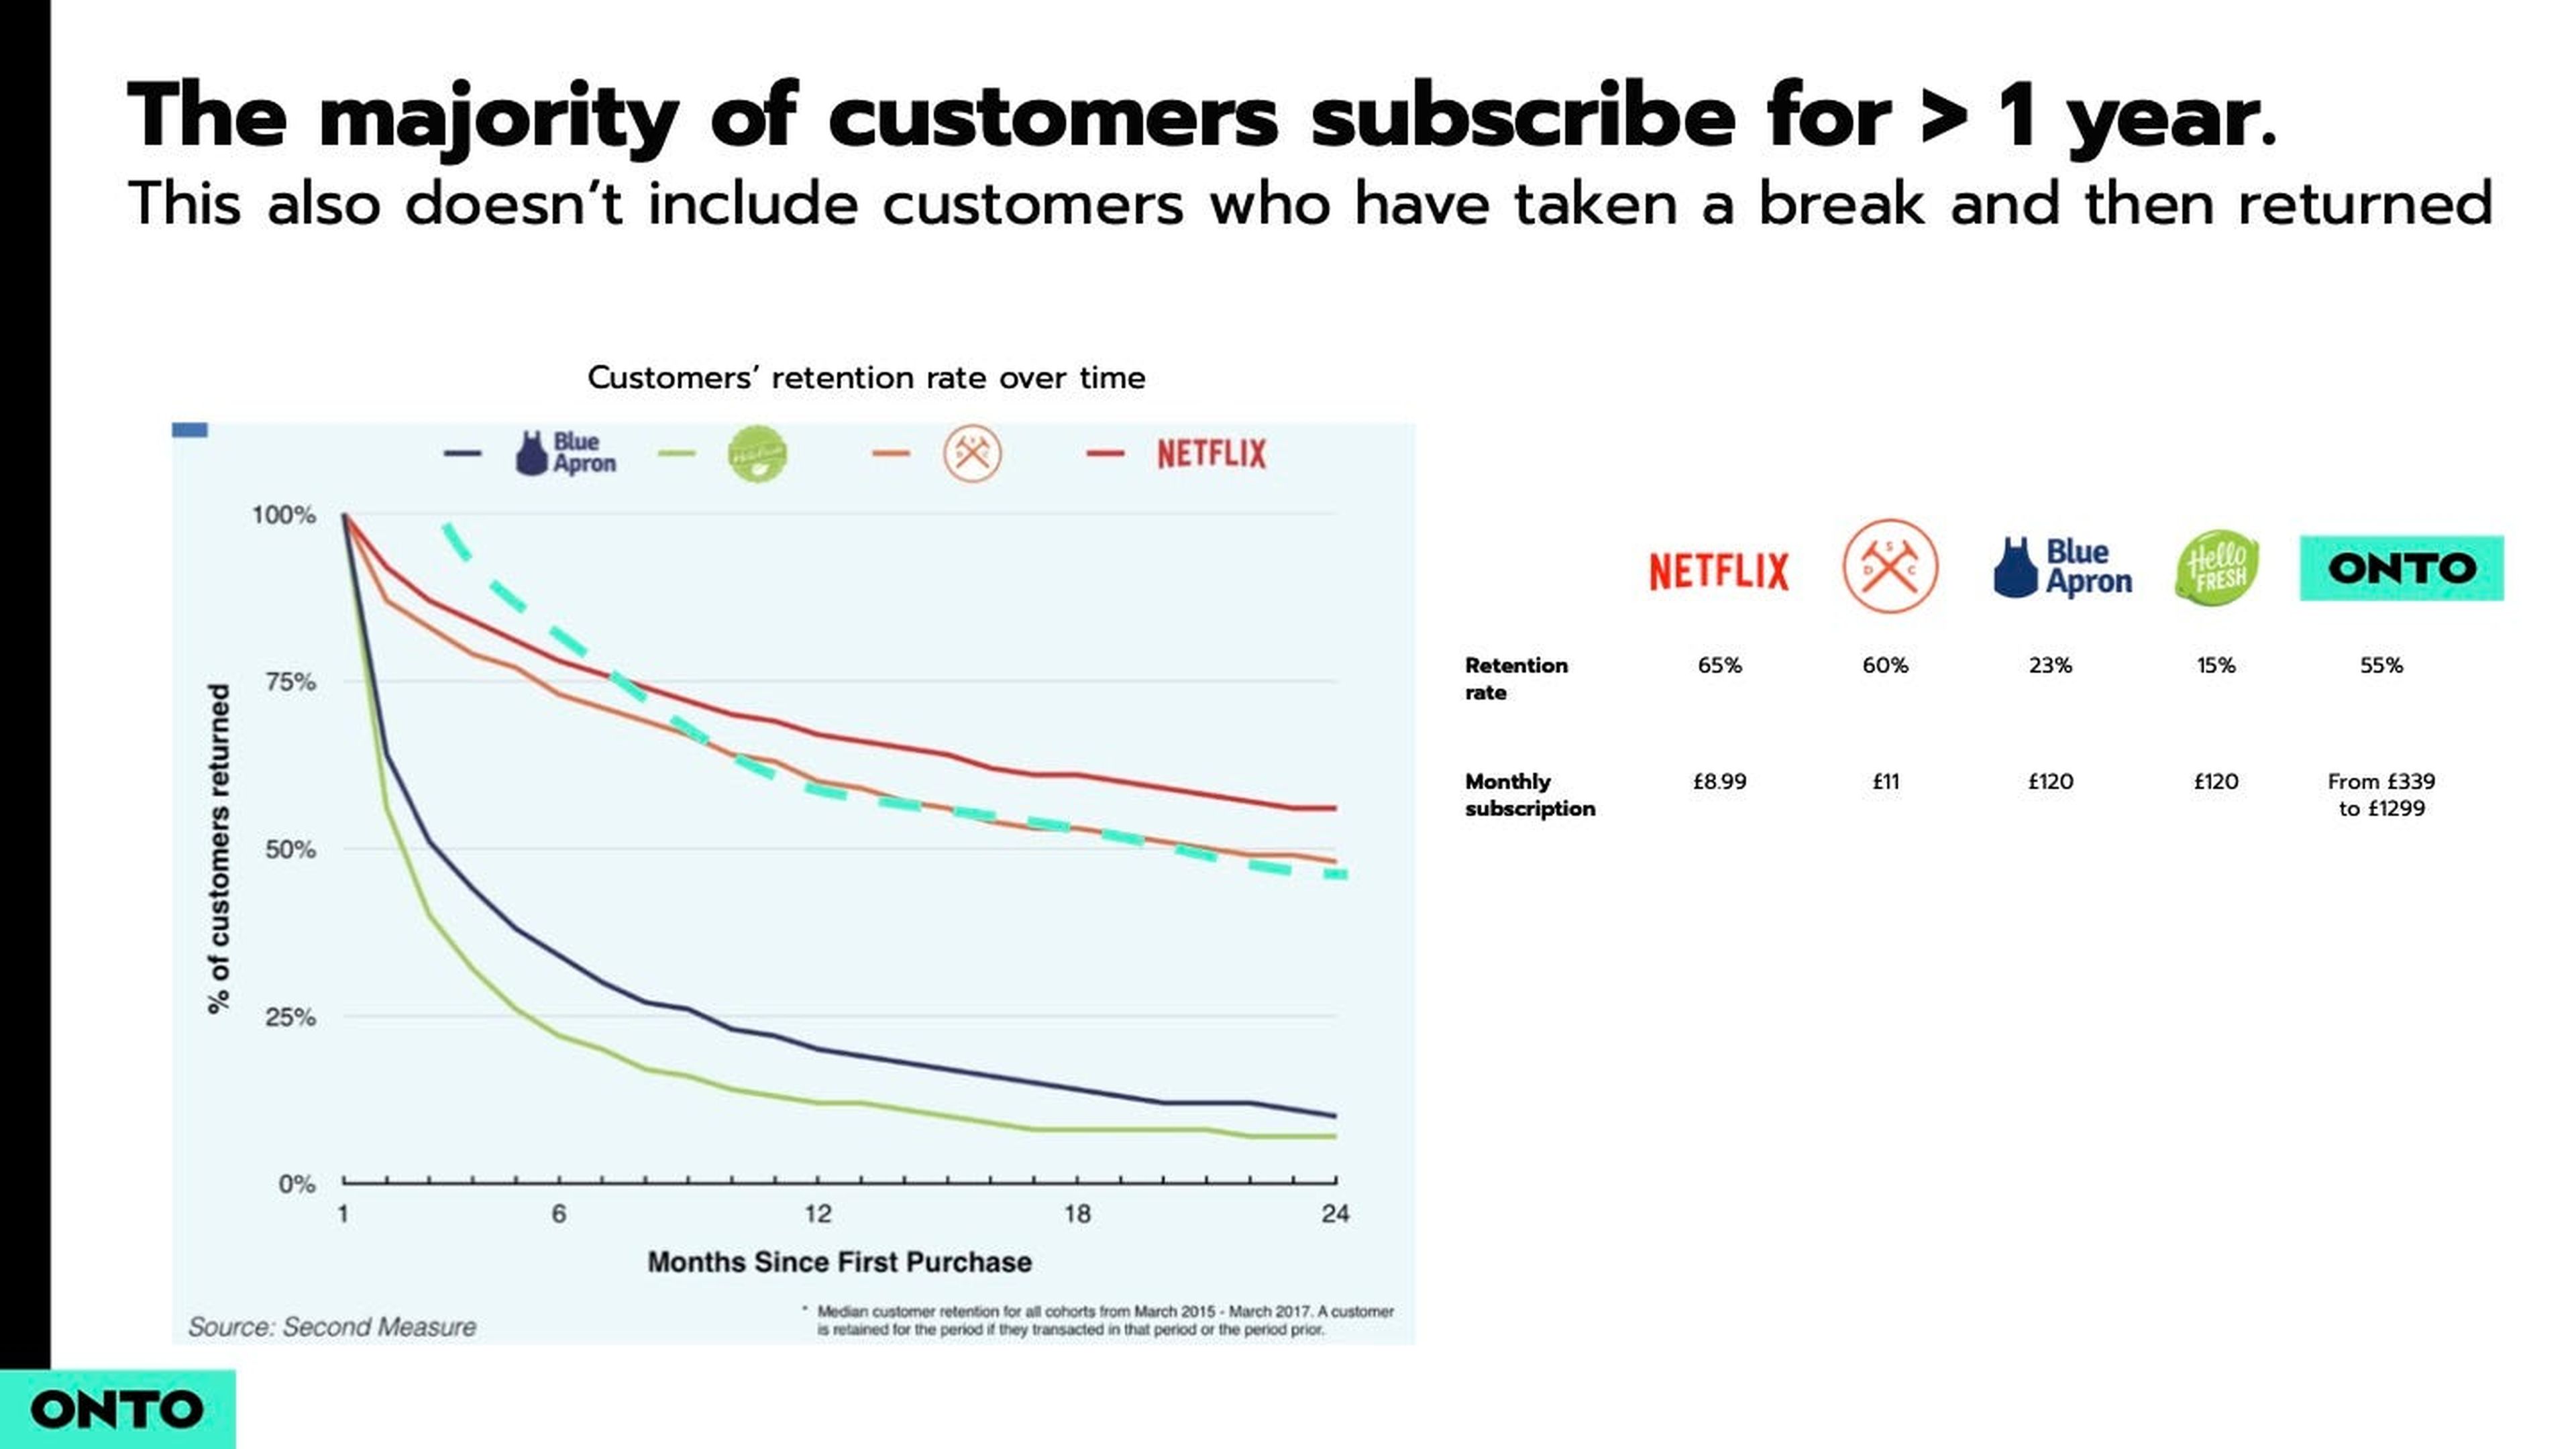 Sin embargo, la tasa de suscripción ronda el año, muy similar a otros servicios que ofrecen suscripciones mensuales como Netflix o Blue Apron.